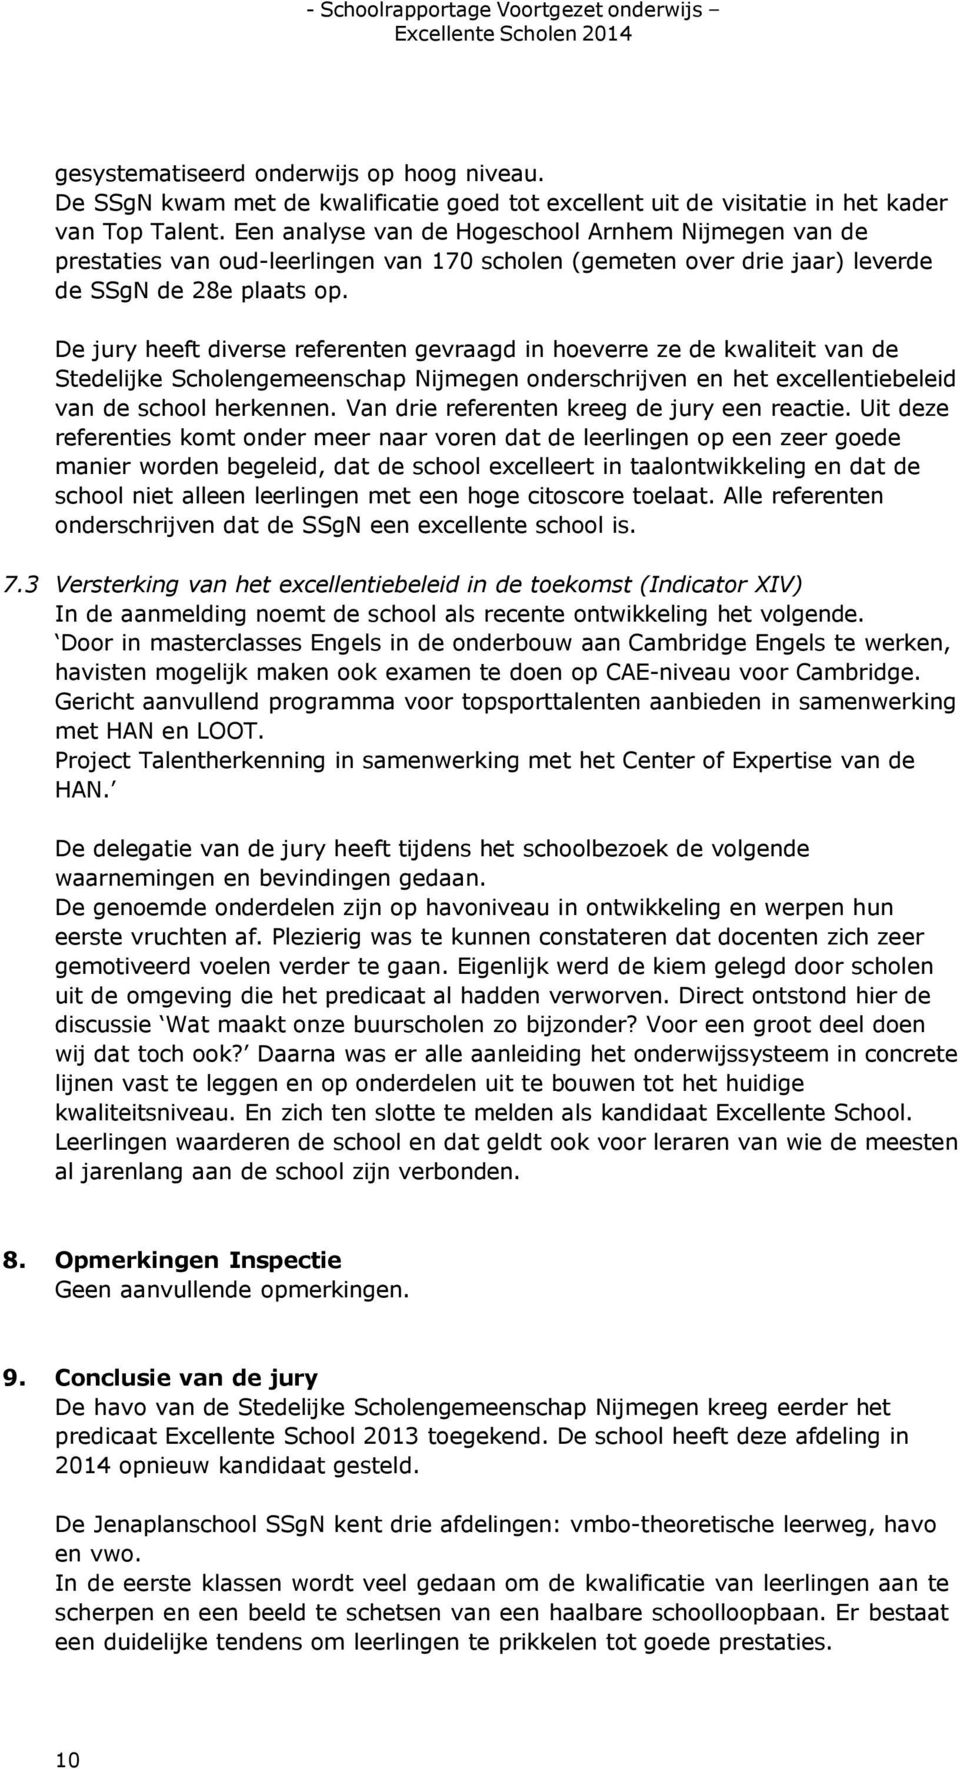 De jury heeft diverse referenten gevraagd in hoeverre ze de kwaliteit van de Stedelijke Scholengemeenschap Nijmegen onderschrijven en het excellentiebeleid van de school herkennen.